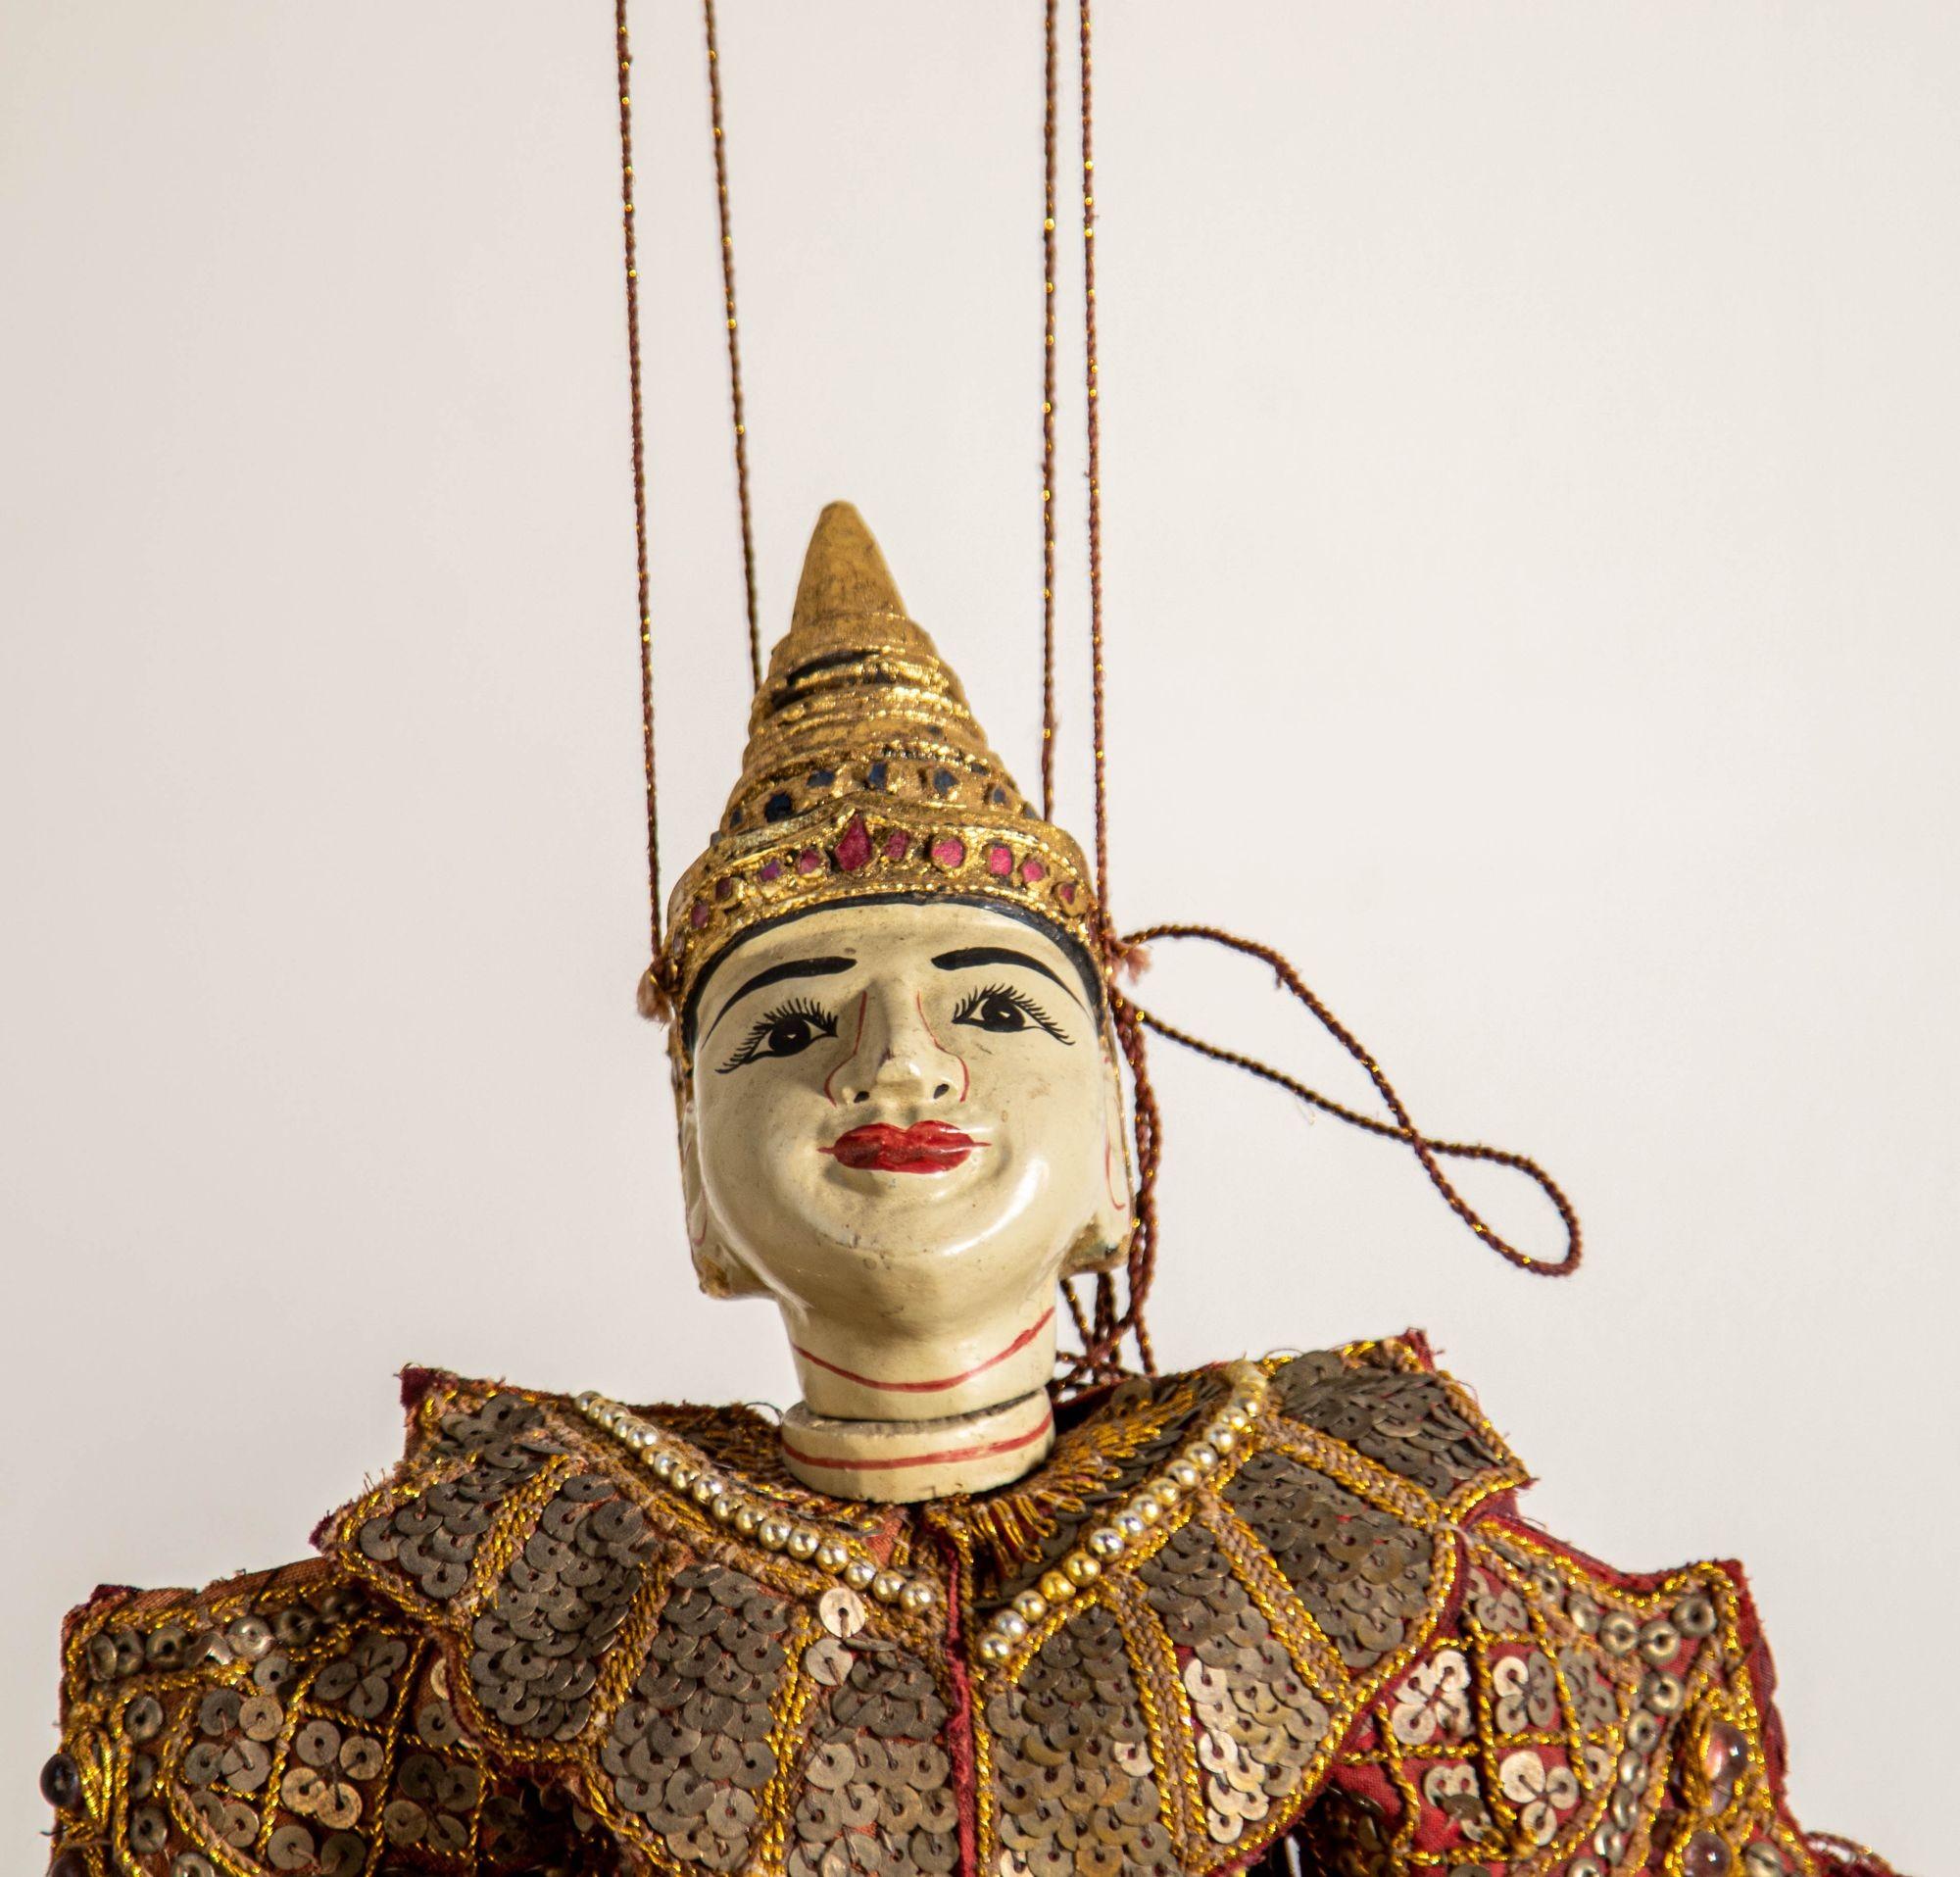 Exquisite handgefertigte Holzmarionette aus den 1950er Jahren mit burmesischer Schnur, die asiatische Opernkunst widerspiegelt.
Diese prächtige burmesisch-thailändische Marionette ist ein Zeugnis meisterhafter Handschnitzerei und aufwändiger